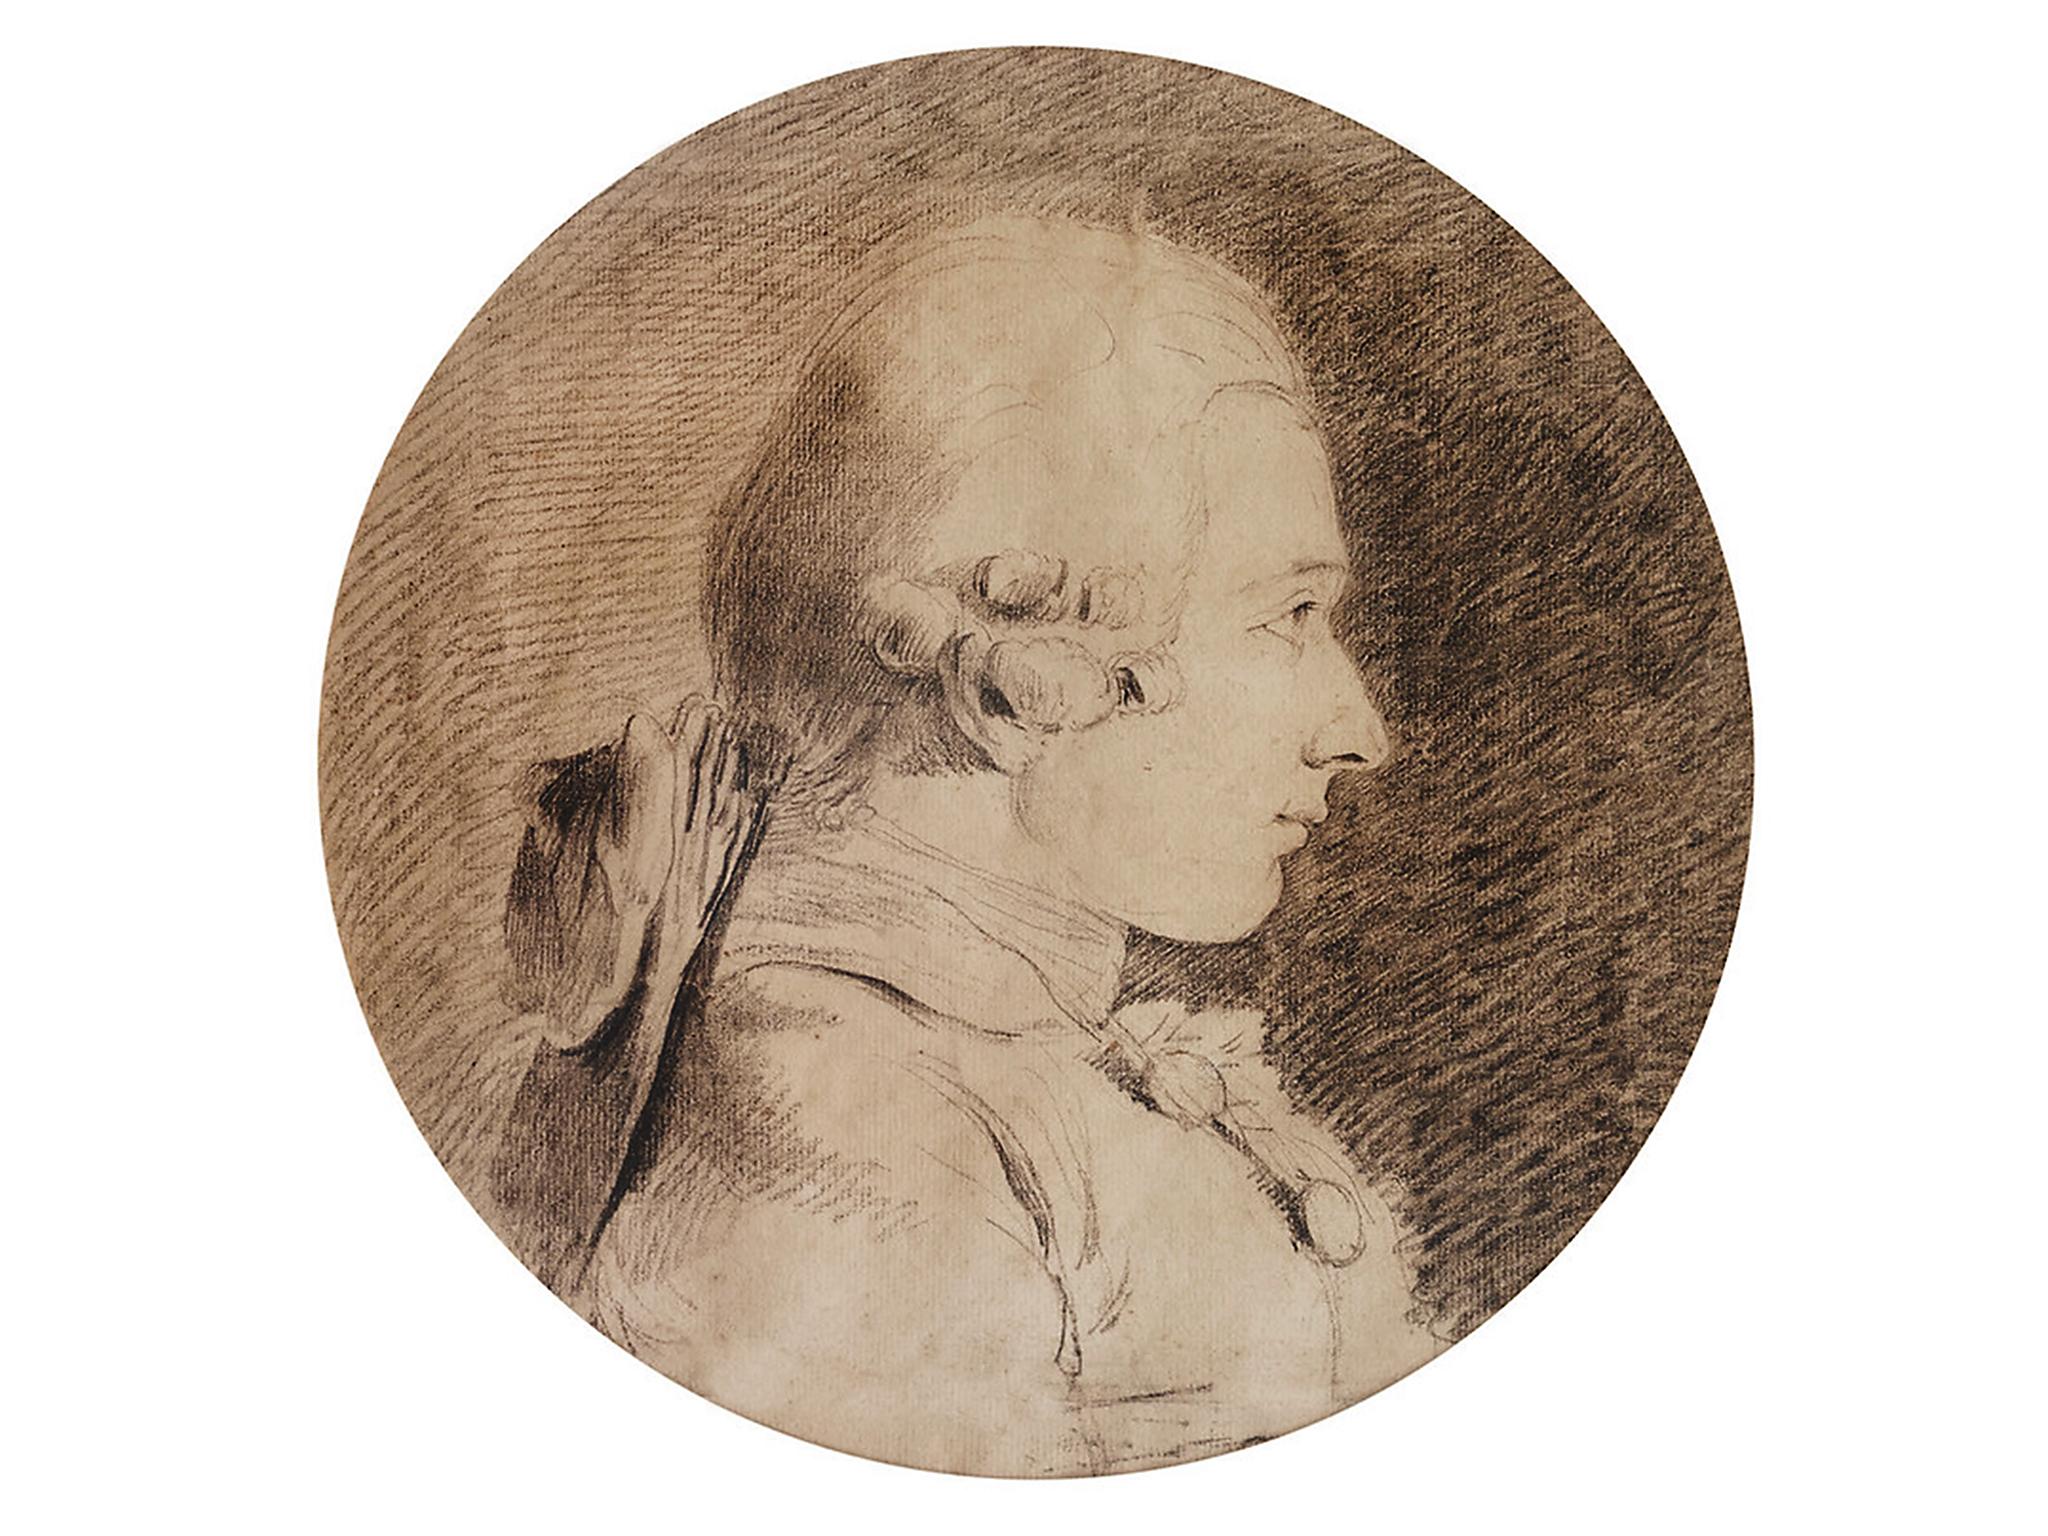 A portrait of the Marquis de Sade, author of ‘120 days of Sodom’